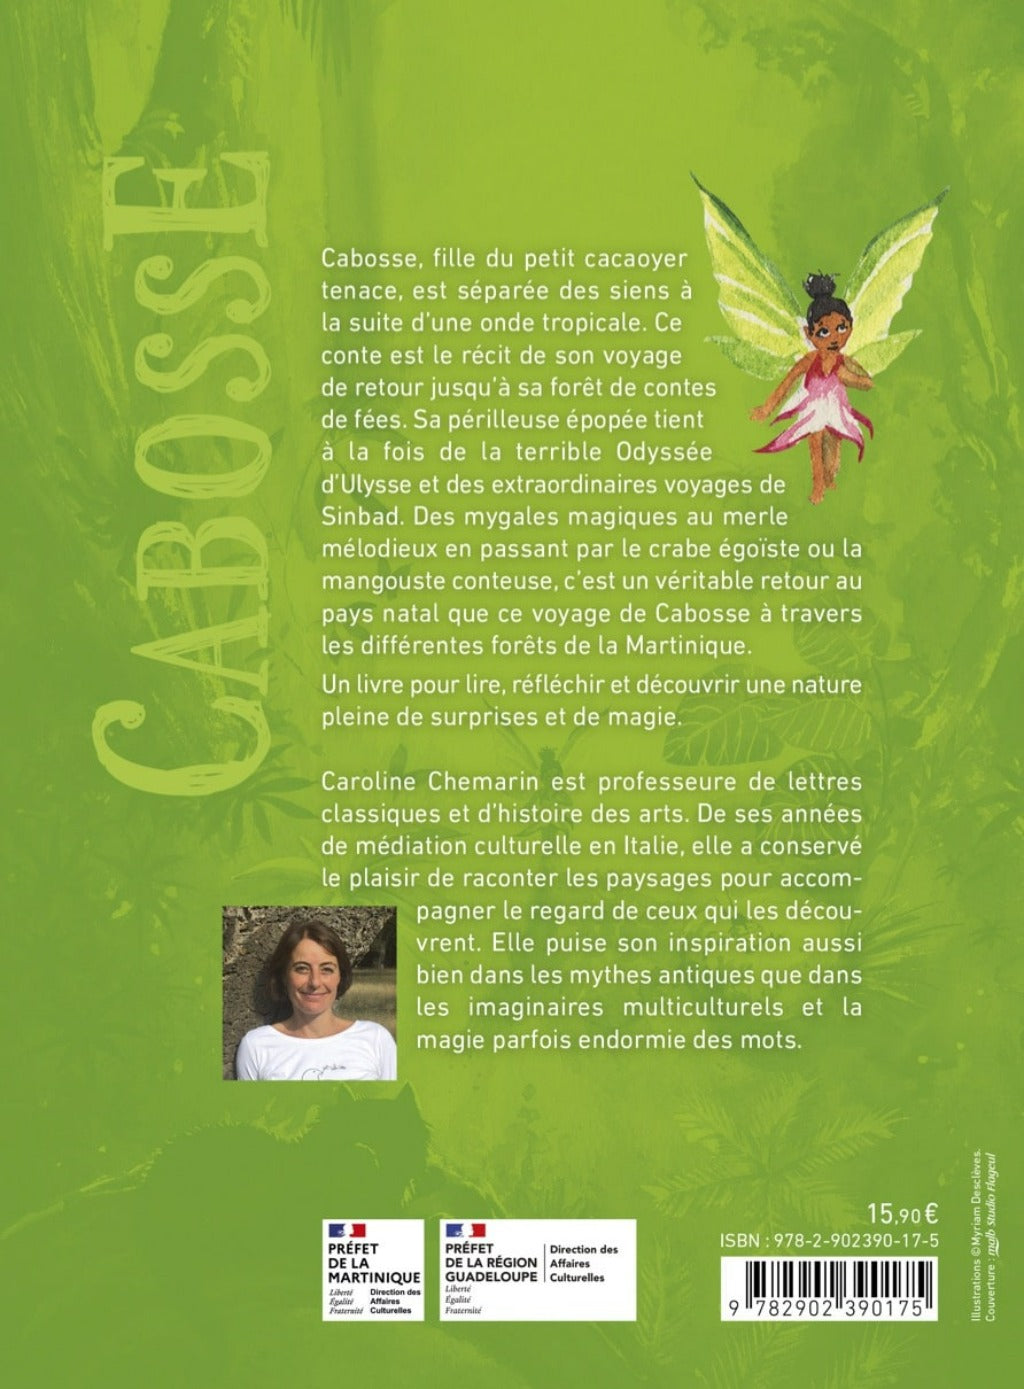 Quatrième de couverture du livre Cabosse éditeur SCITEP jeunesse auteur Caroline Chemarin conte pour enfants à partir de 9 ans